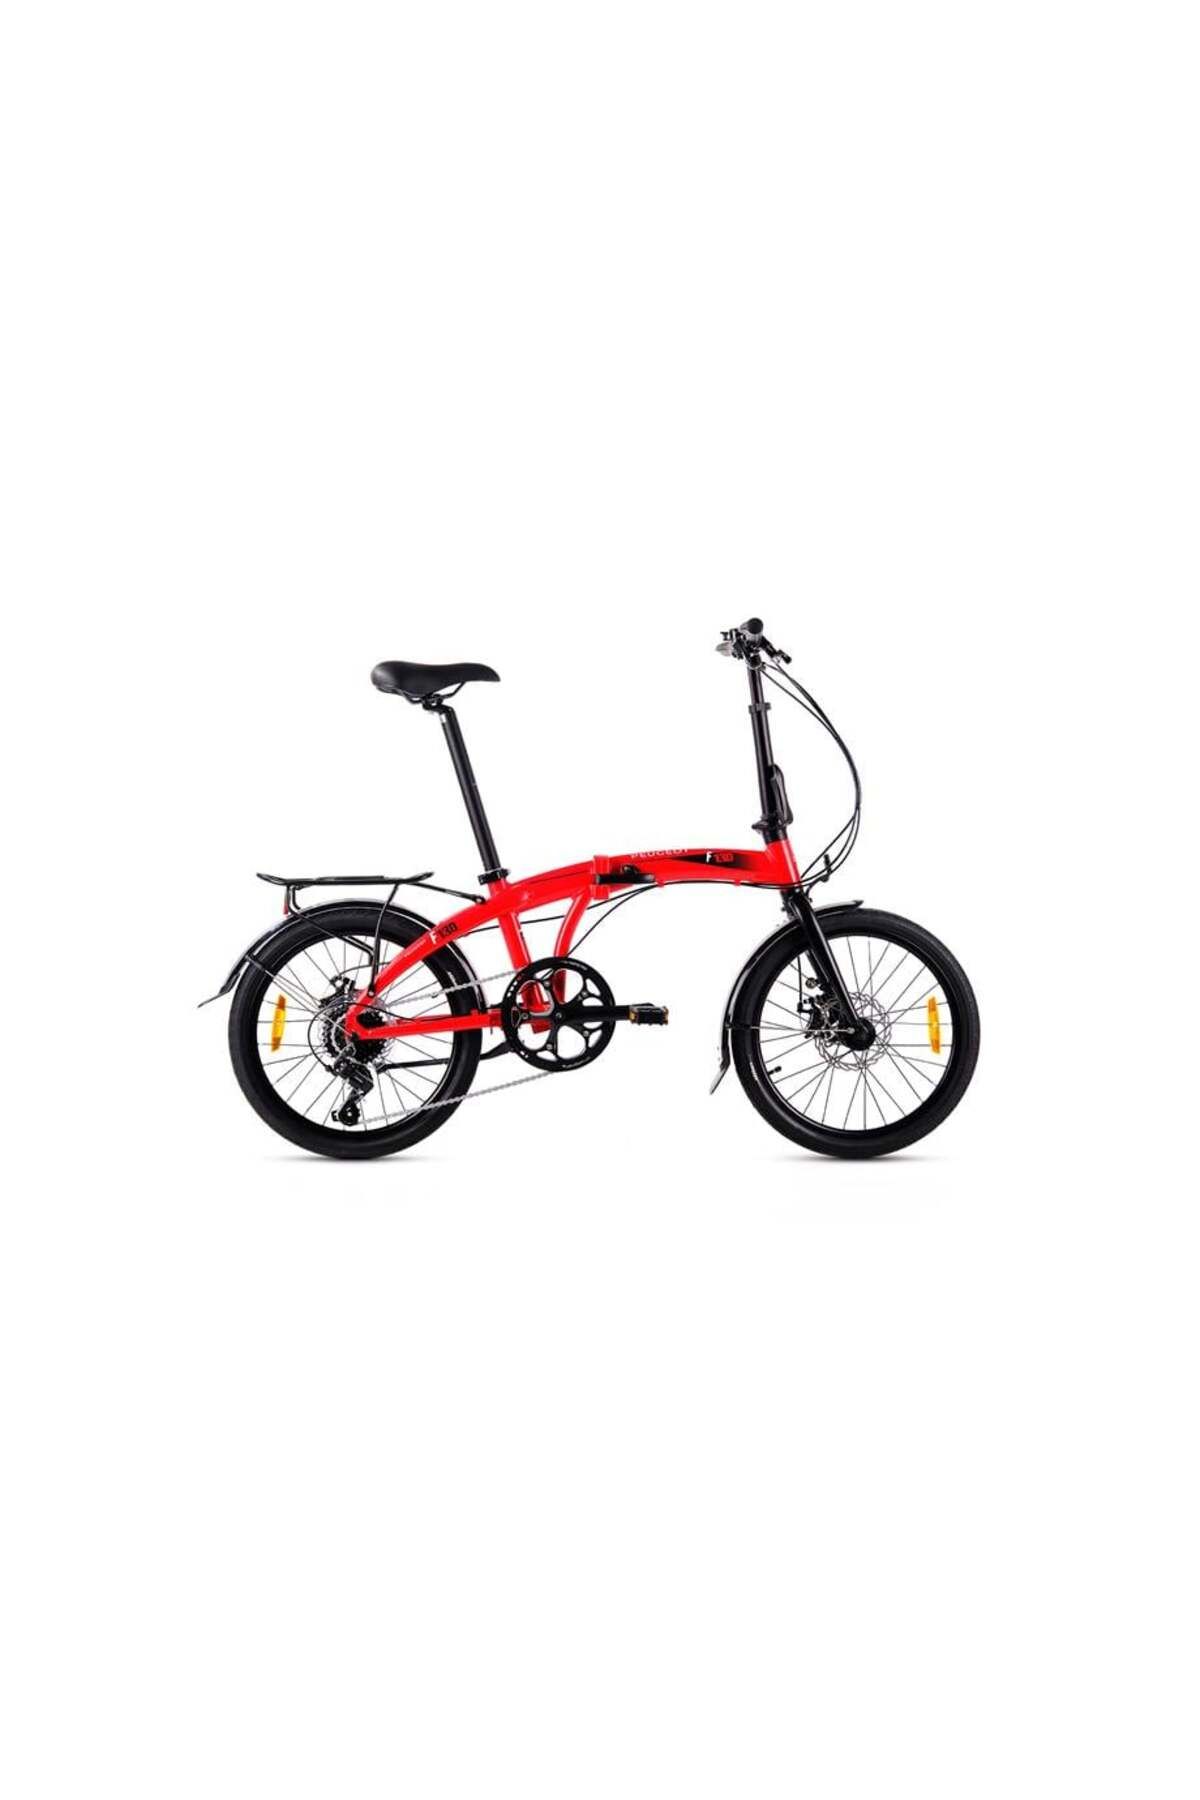 Peugeot Bisiklet Peugeot F13-d Foldıng Katlanır Bisiklet 330h Md 20 Jant 7 Vites Kırmızı